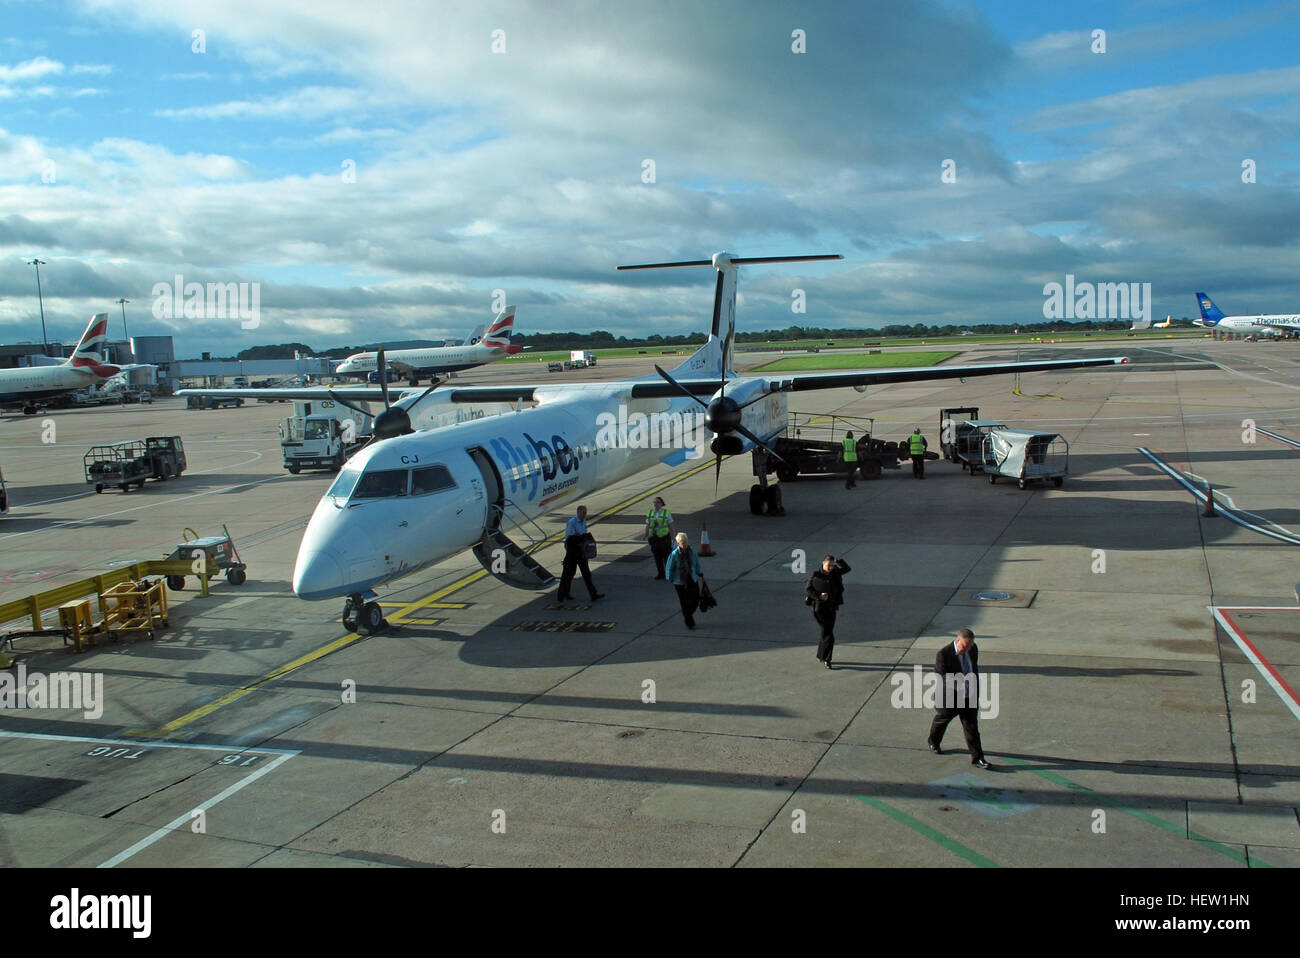 Flybe air avion G-JECJ Bombardier Dash-8 Q400 arrivant de l'aéroport Manchester Ringway, England, UK Banque D'Images